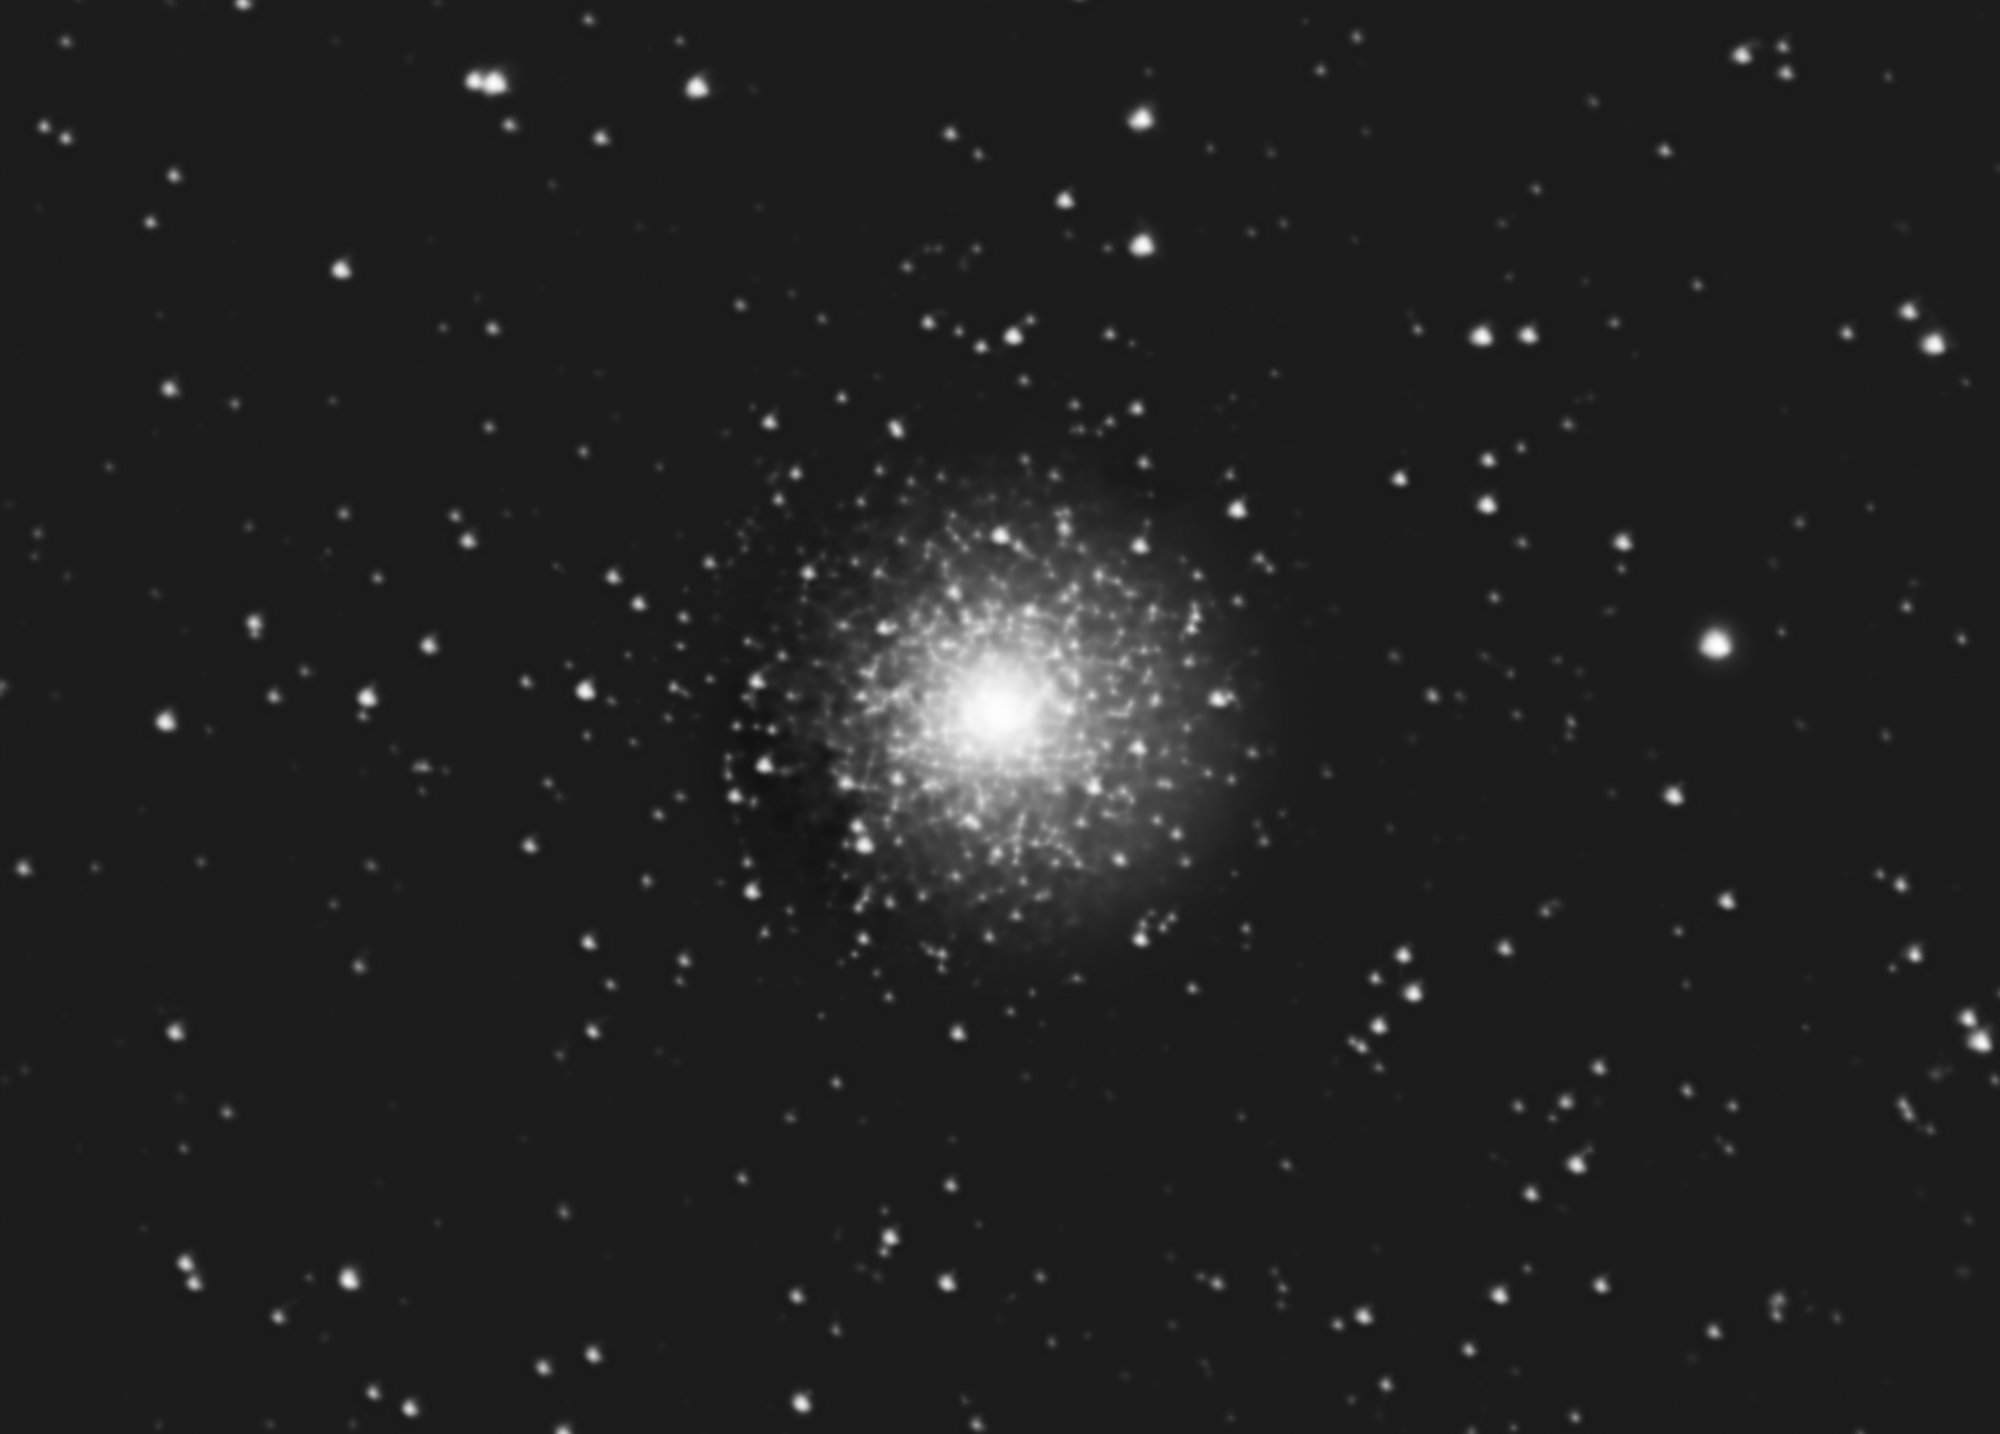 NGC1851